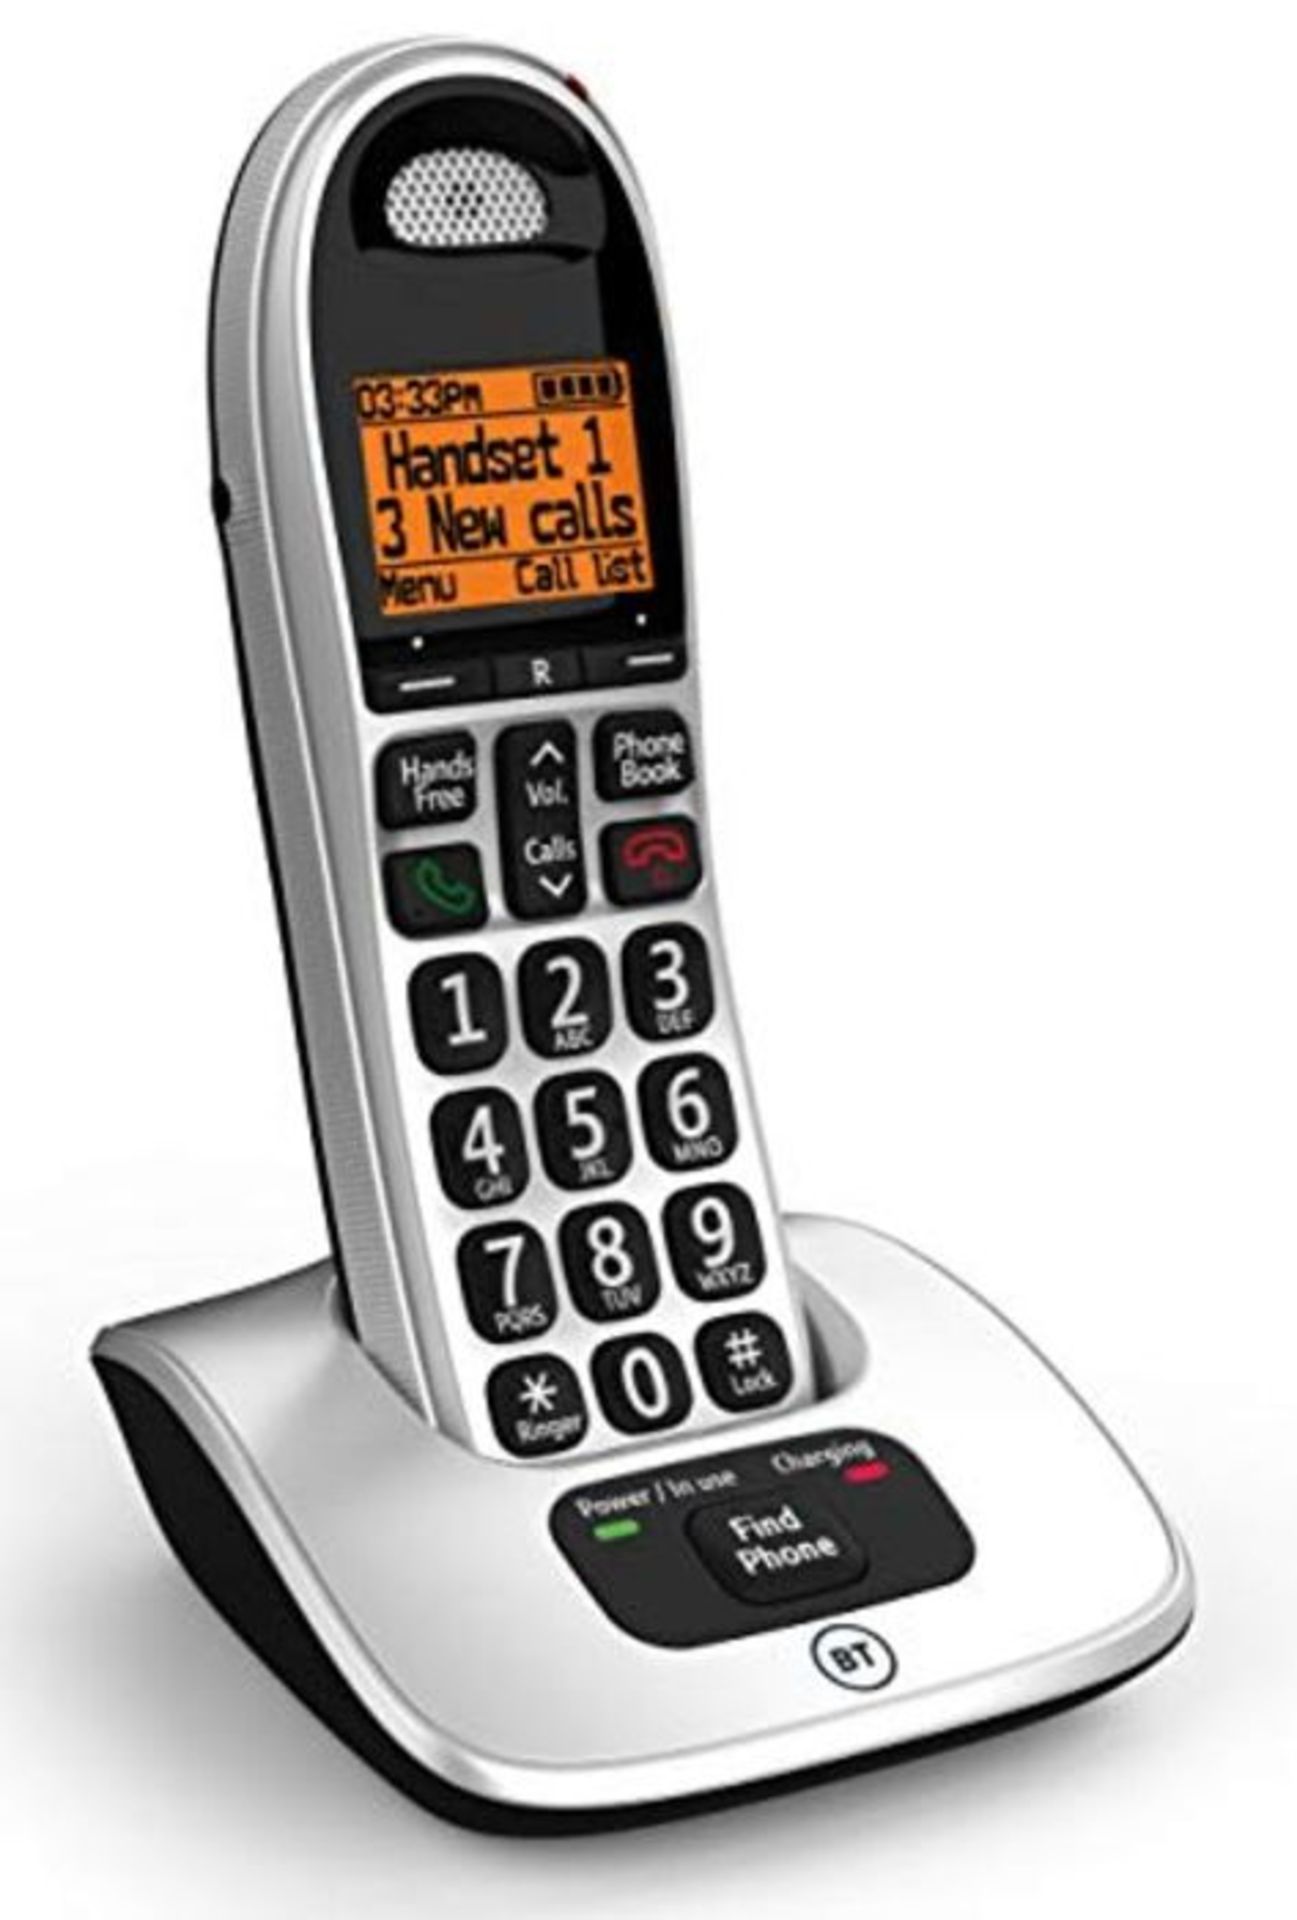 BT 4000 Big Button Advanced Call Blocker Home Phone, Single Handset Pack